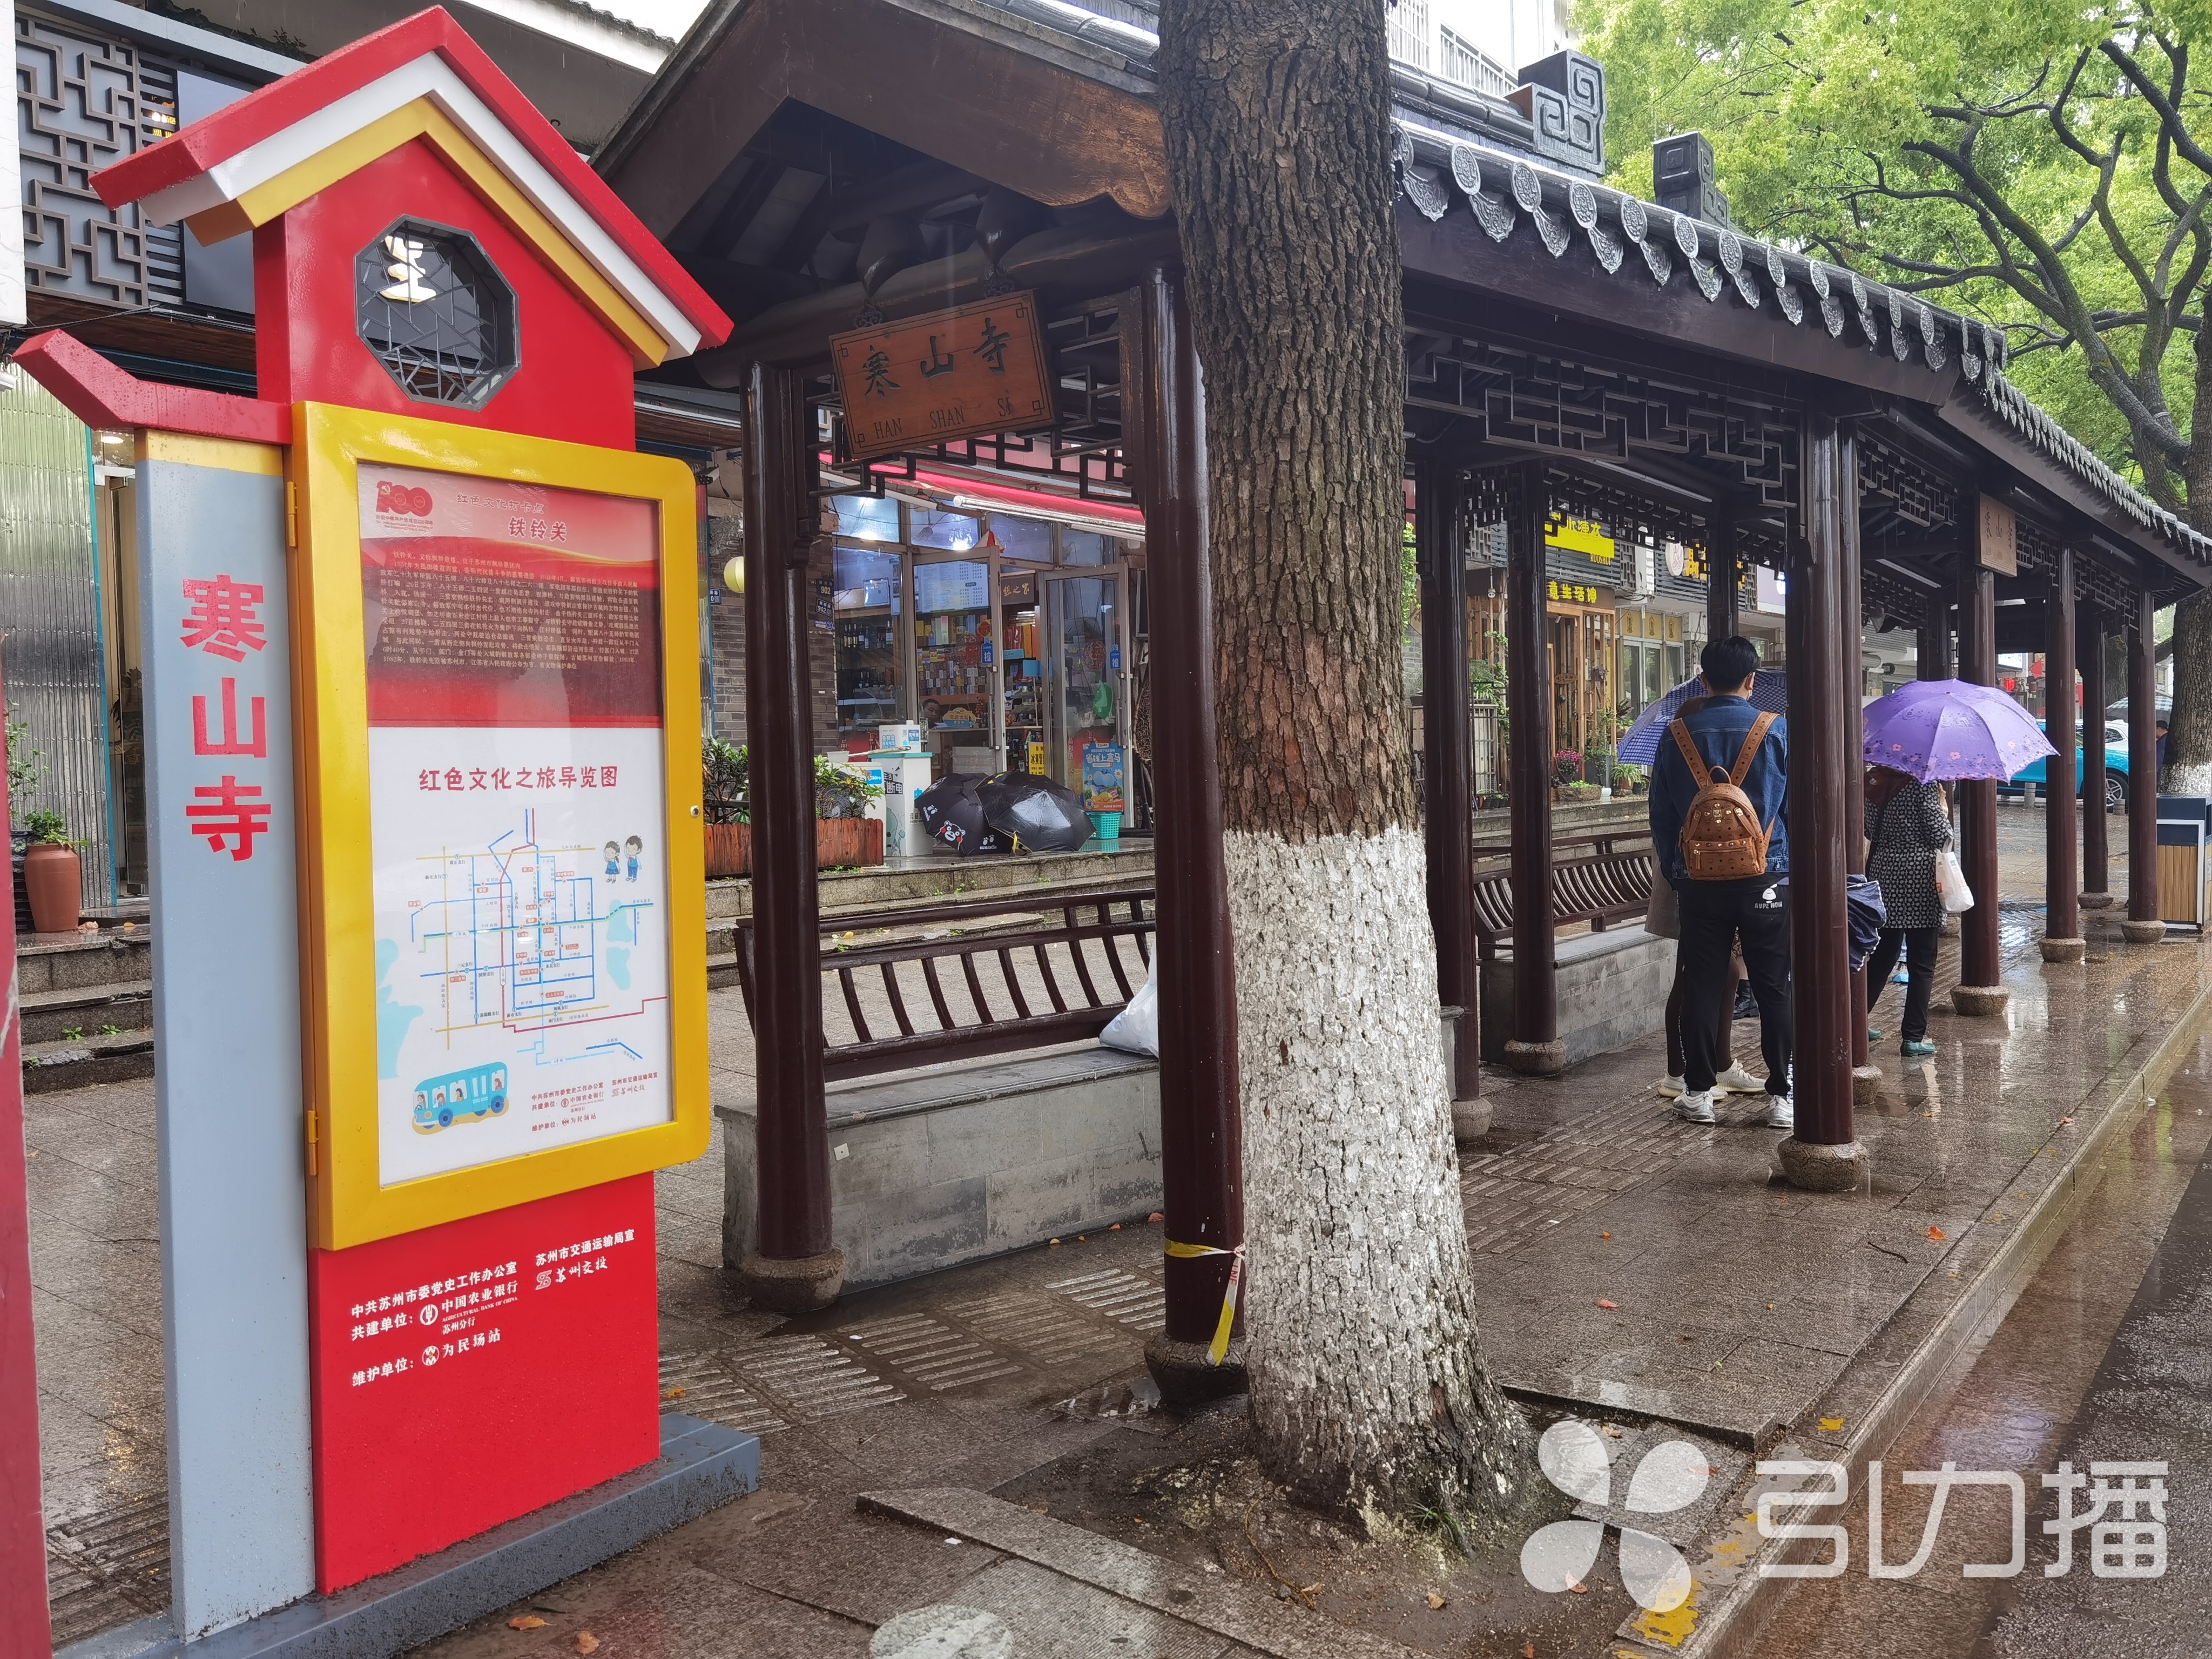 凯发k8国际娱乐官网入口姑苏区15对公交站台有了红色主题灯箱